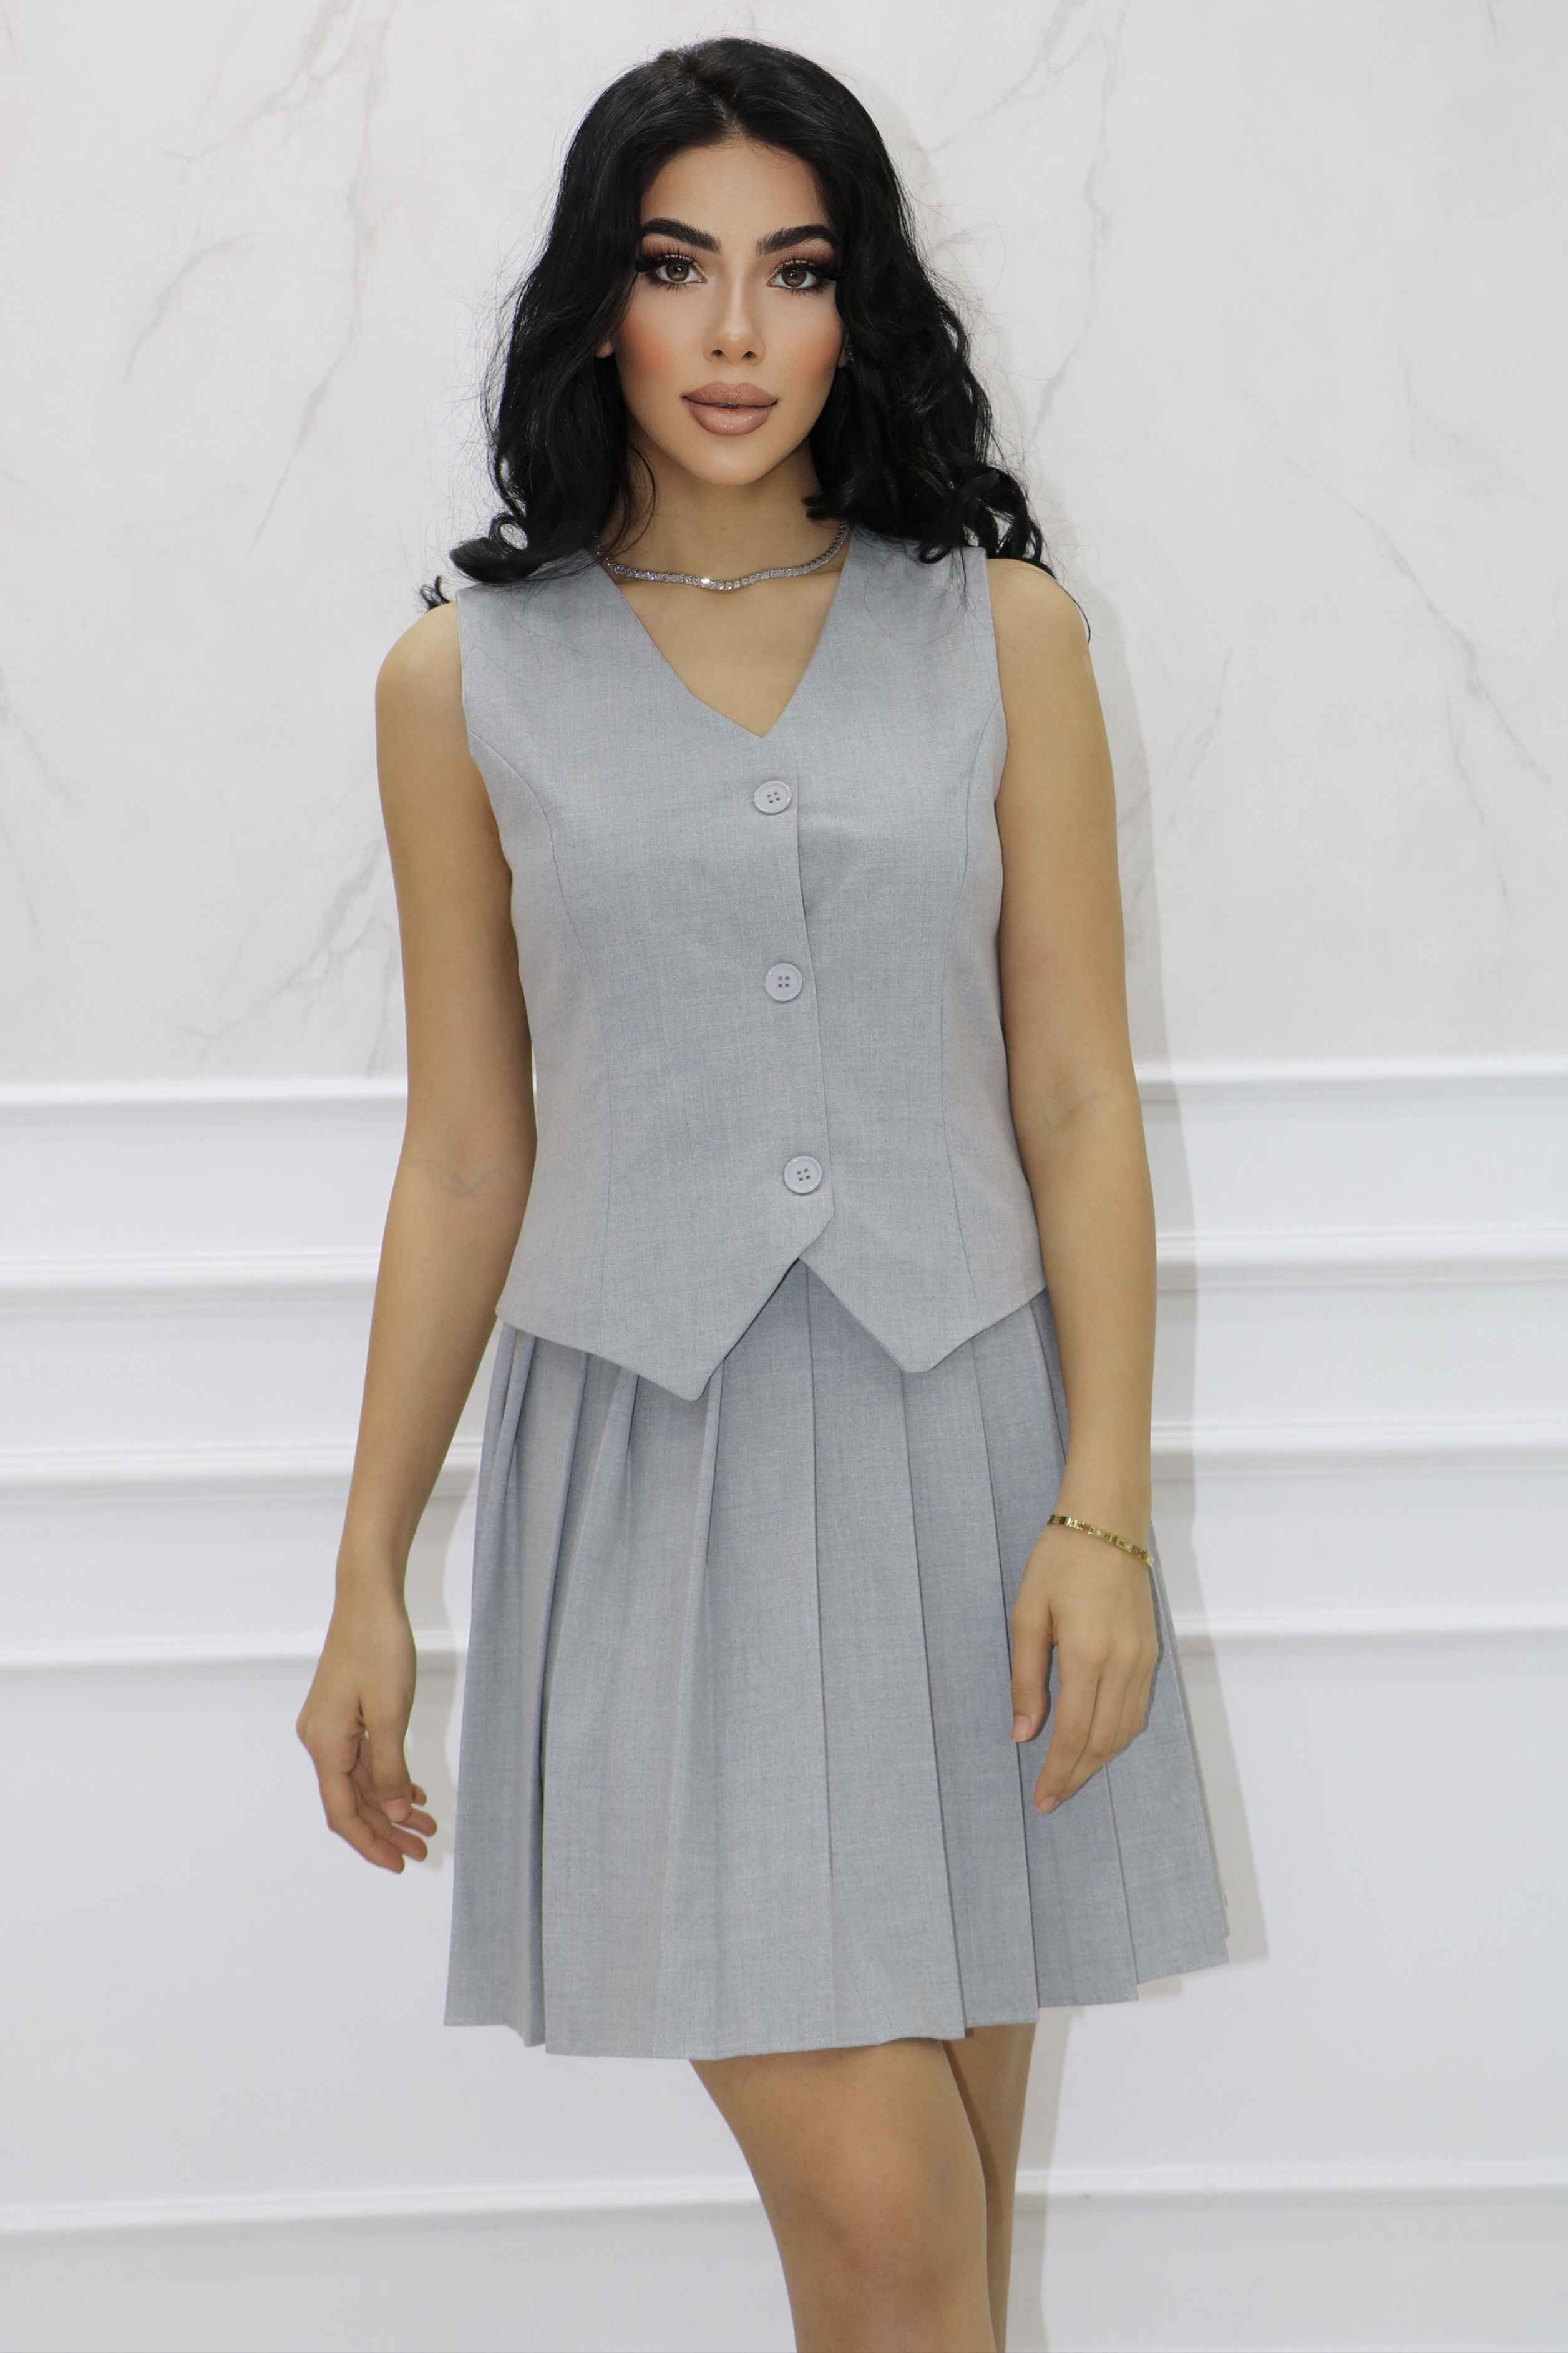 2108 - Poliviskon Tasarım Bluz Mini Etek Tasarım Alt Üst Takım Elbise